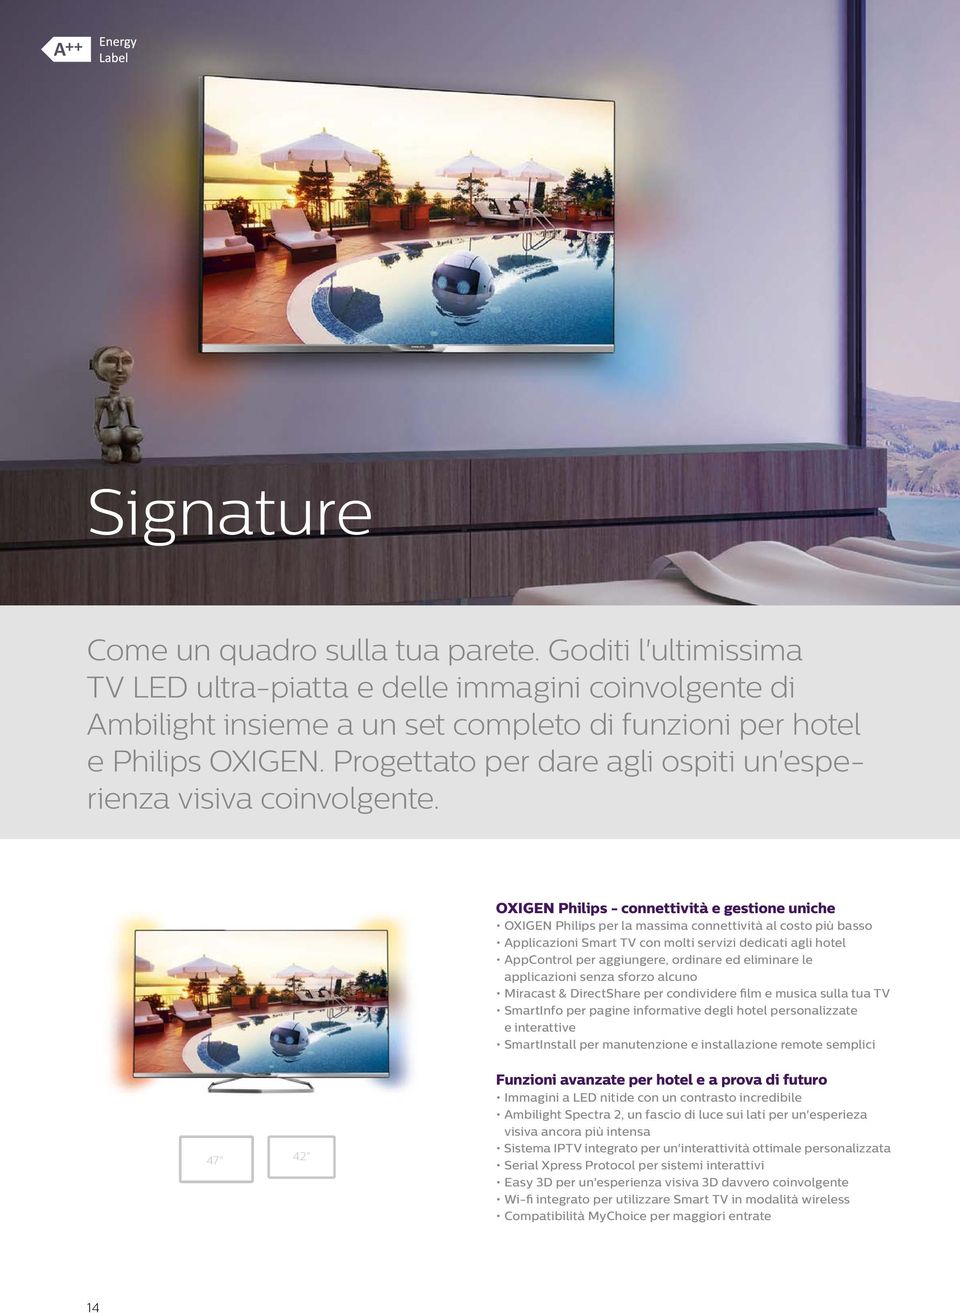 OXIGEN Philips - connettività e gestione uniche OXIGEN Philips per la massima connettività al costo più basso Applicazioni Smart TV con molti servizi dedicati agli hotel AppControl per aggiungere,